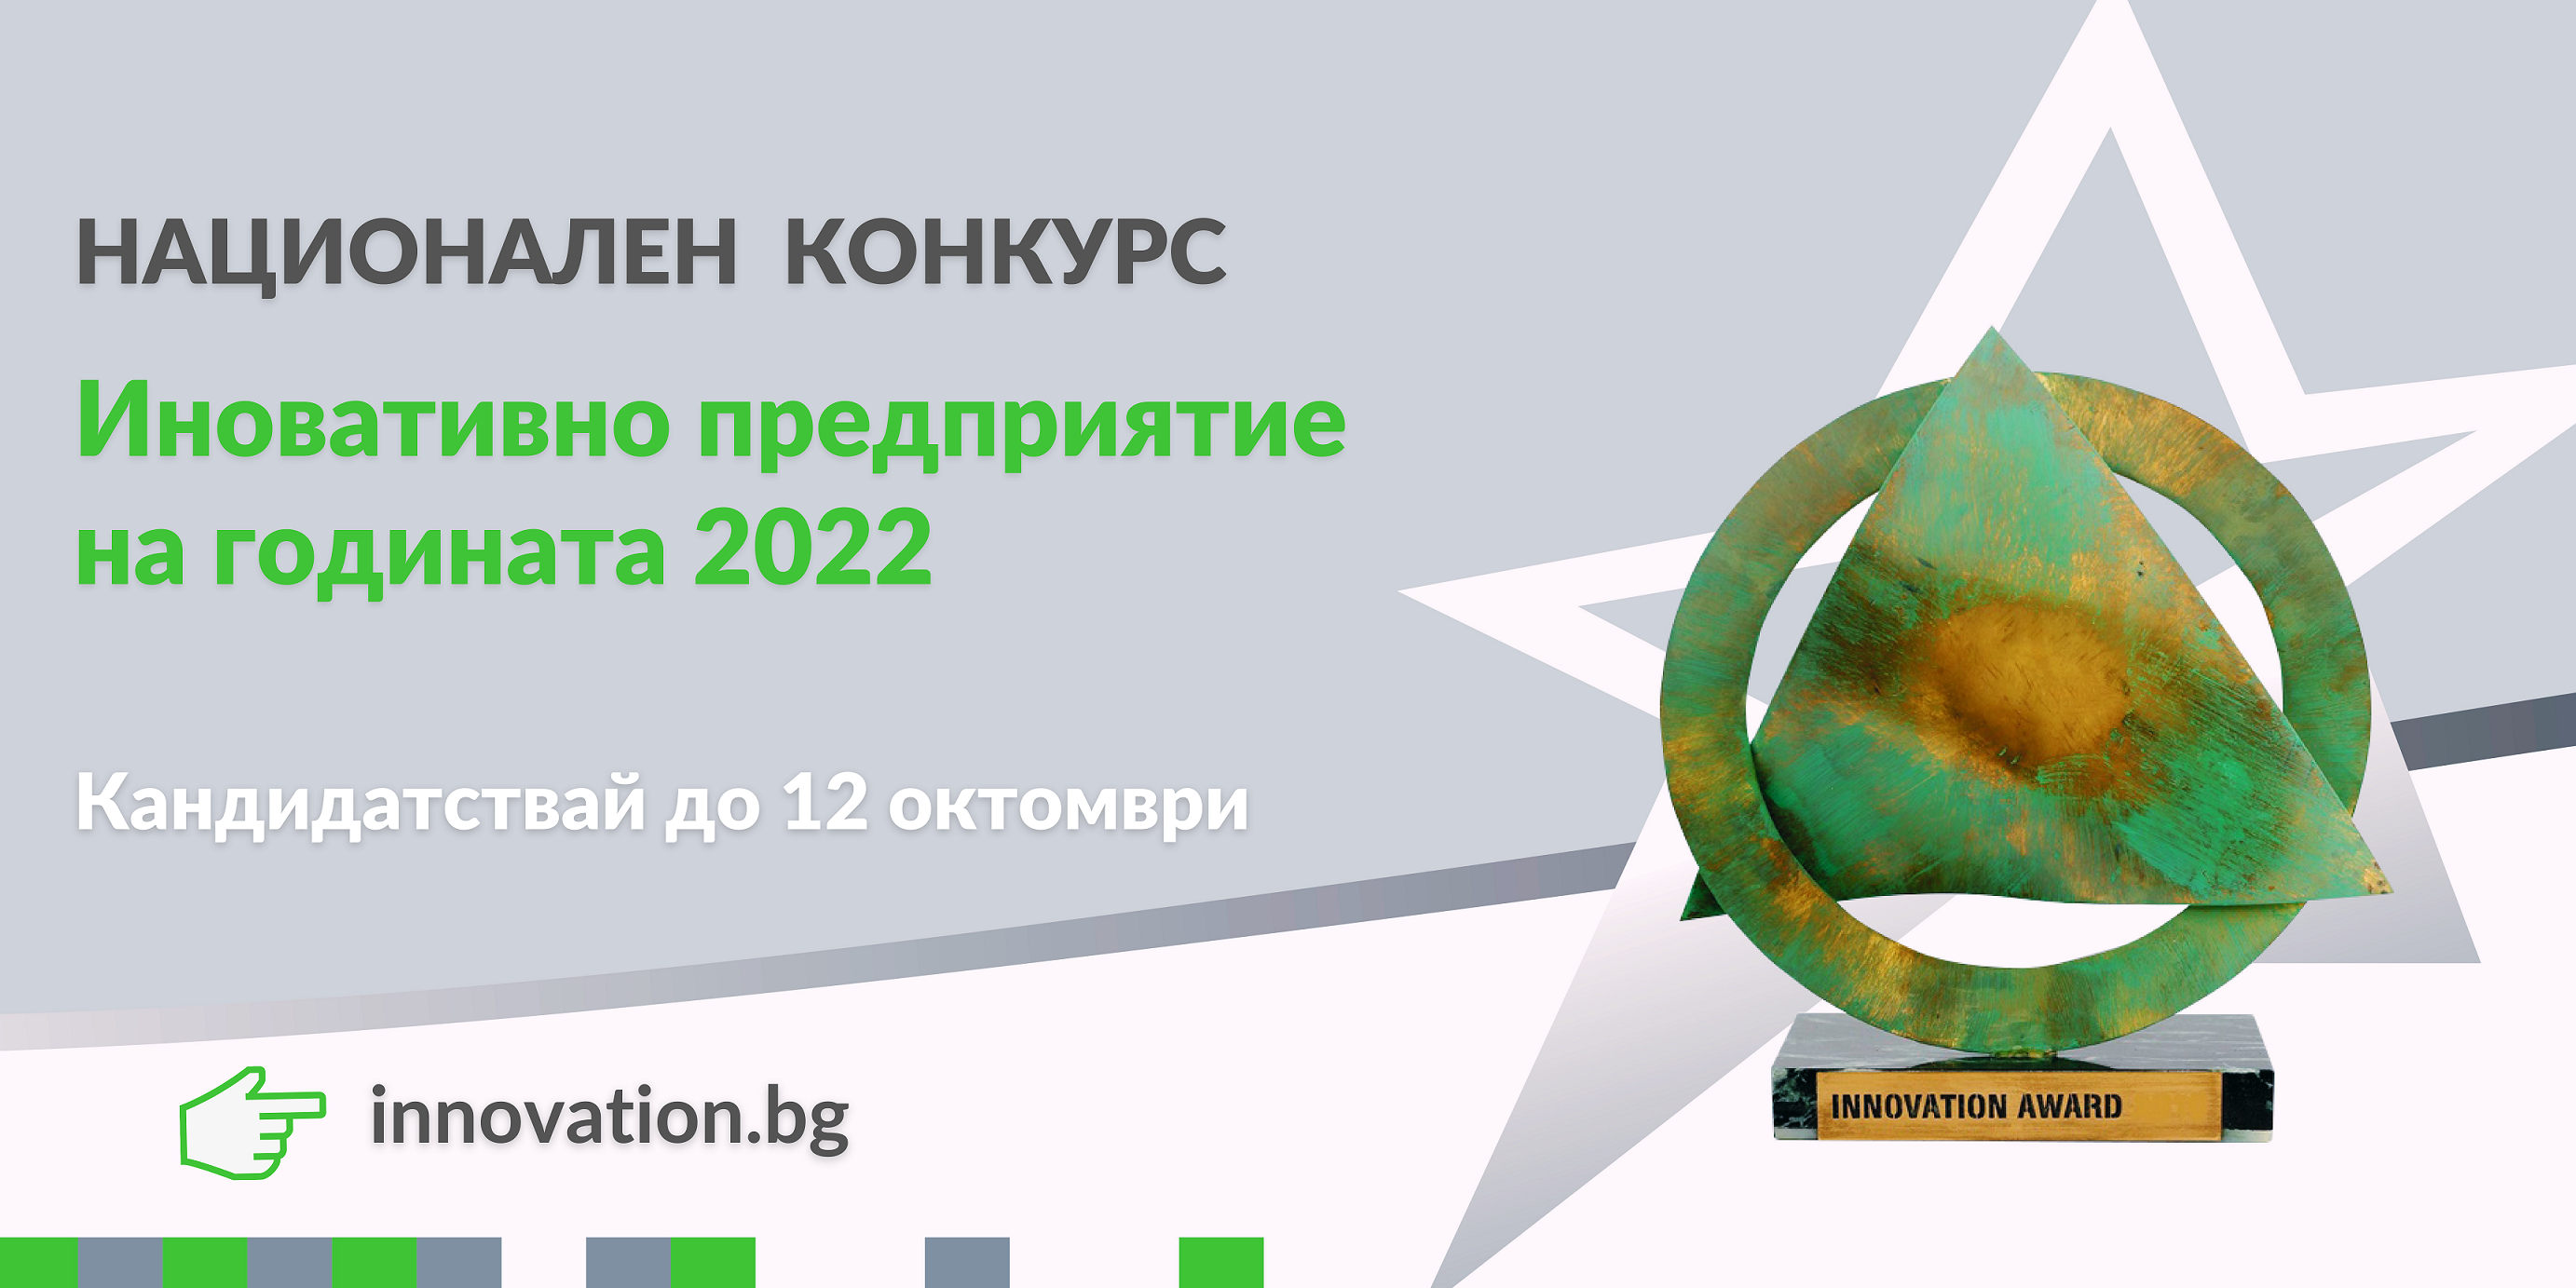 Националният конкурс “Иновативно предприятие на годината 2022” търси предприемачите с визия 